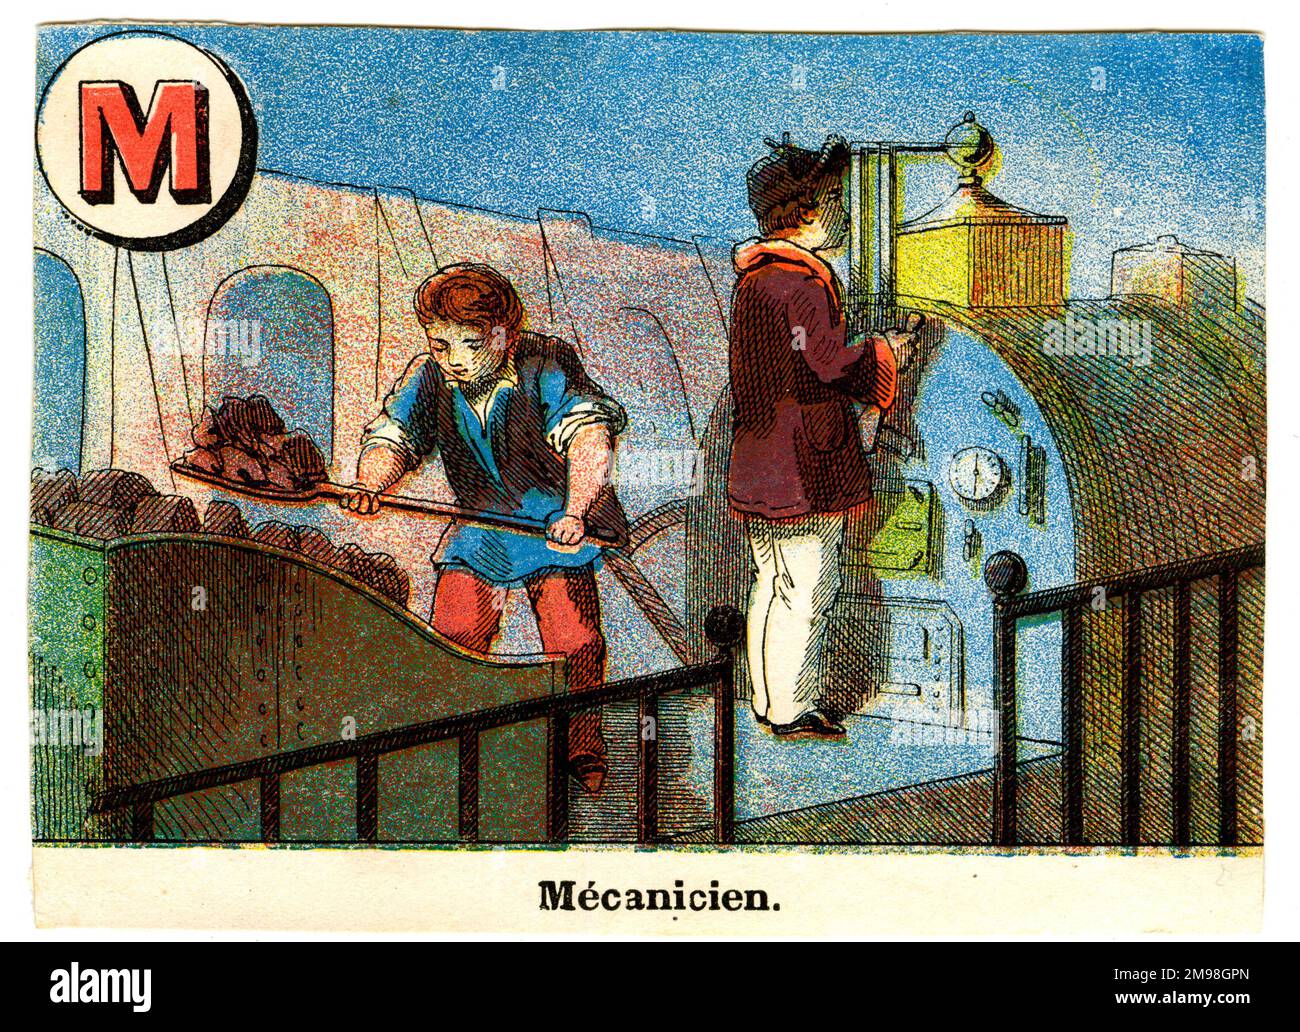 Alfabeto ferroviario francese - M per Mecanicien (driver motore). Foto Stock